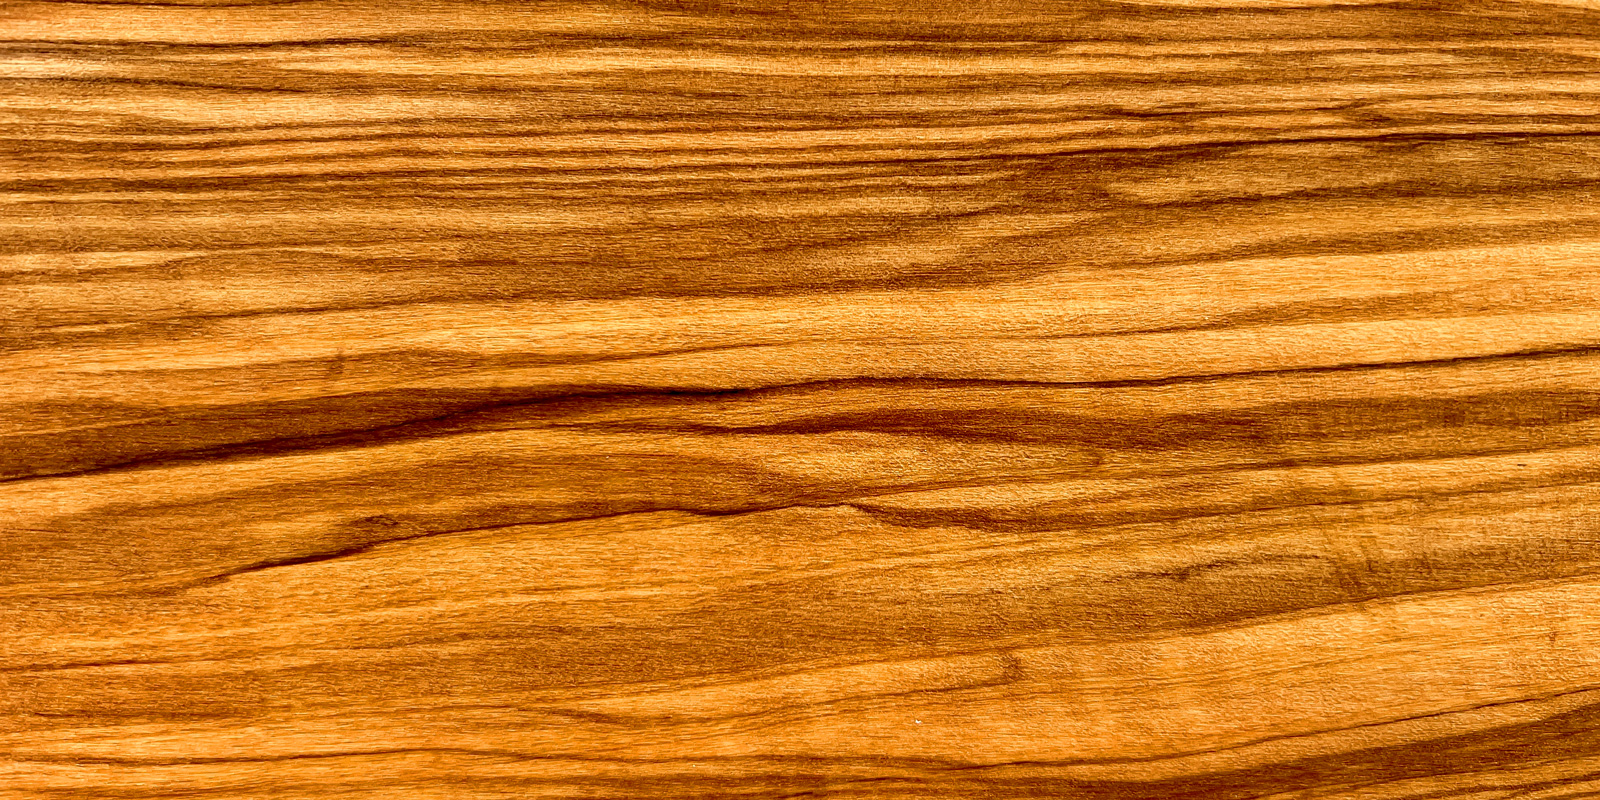 Productos de madera de olivo Articulos de madera de olivo con bellas vetas que aportan un tono calido a la mesa.